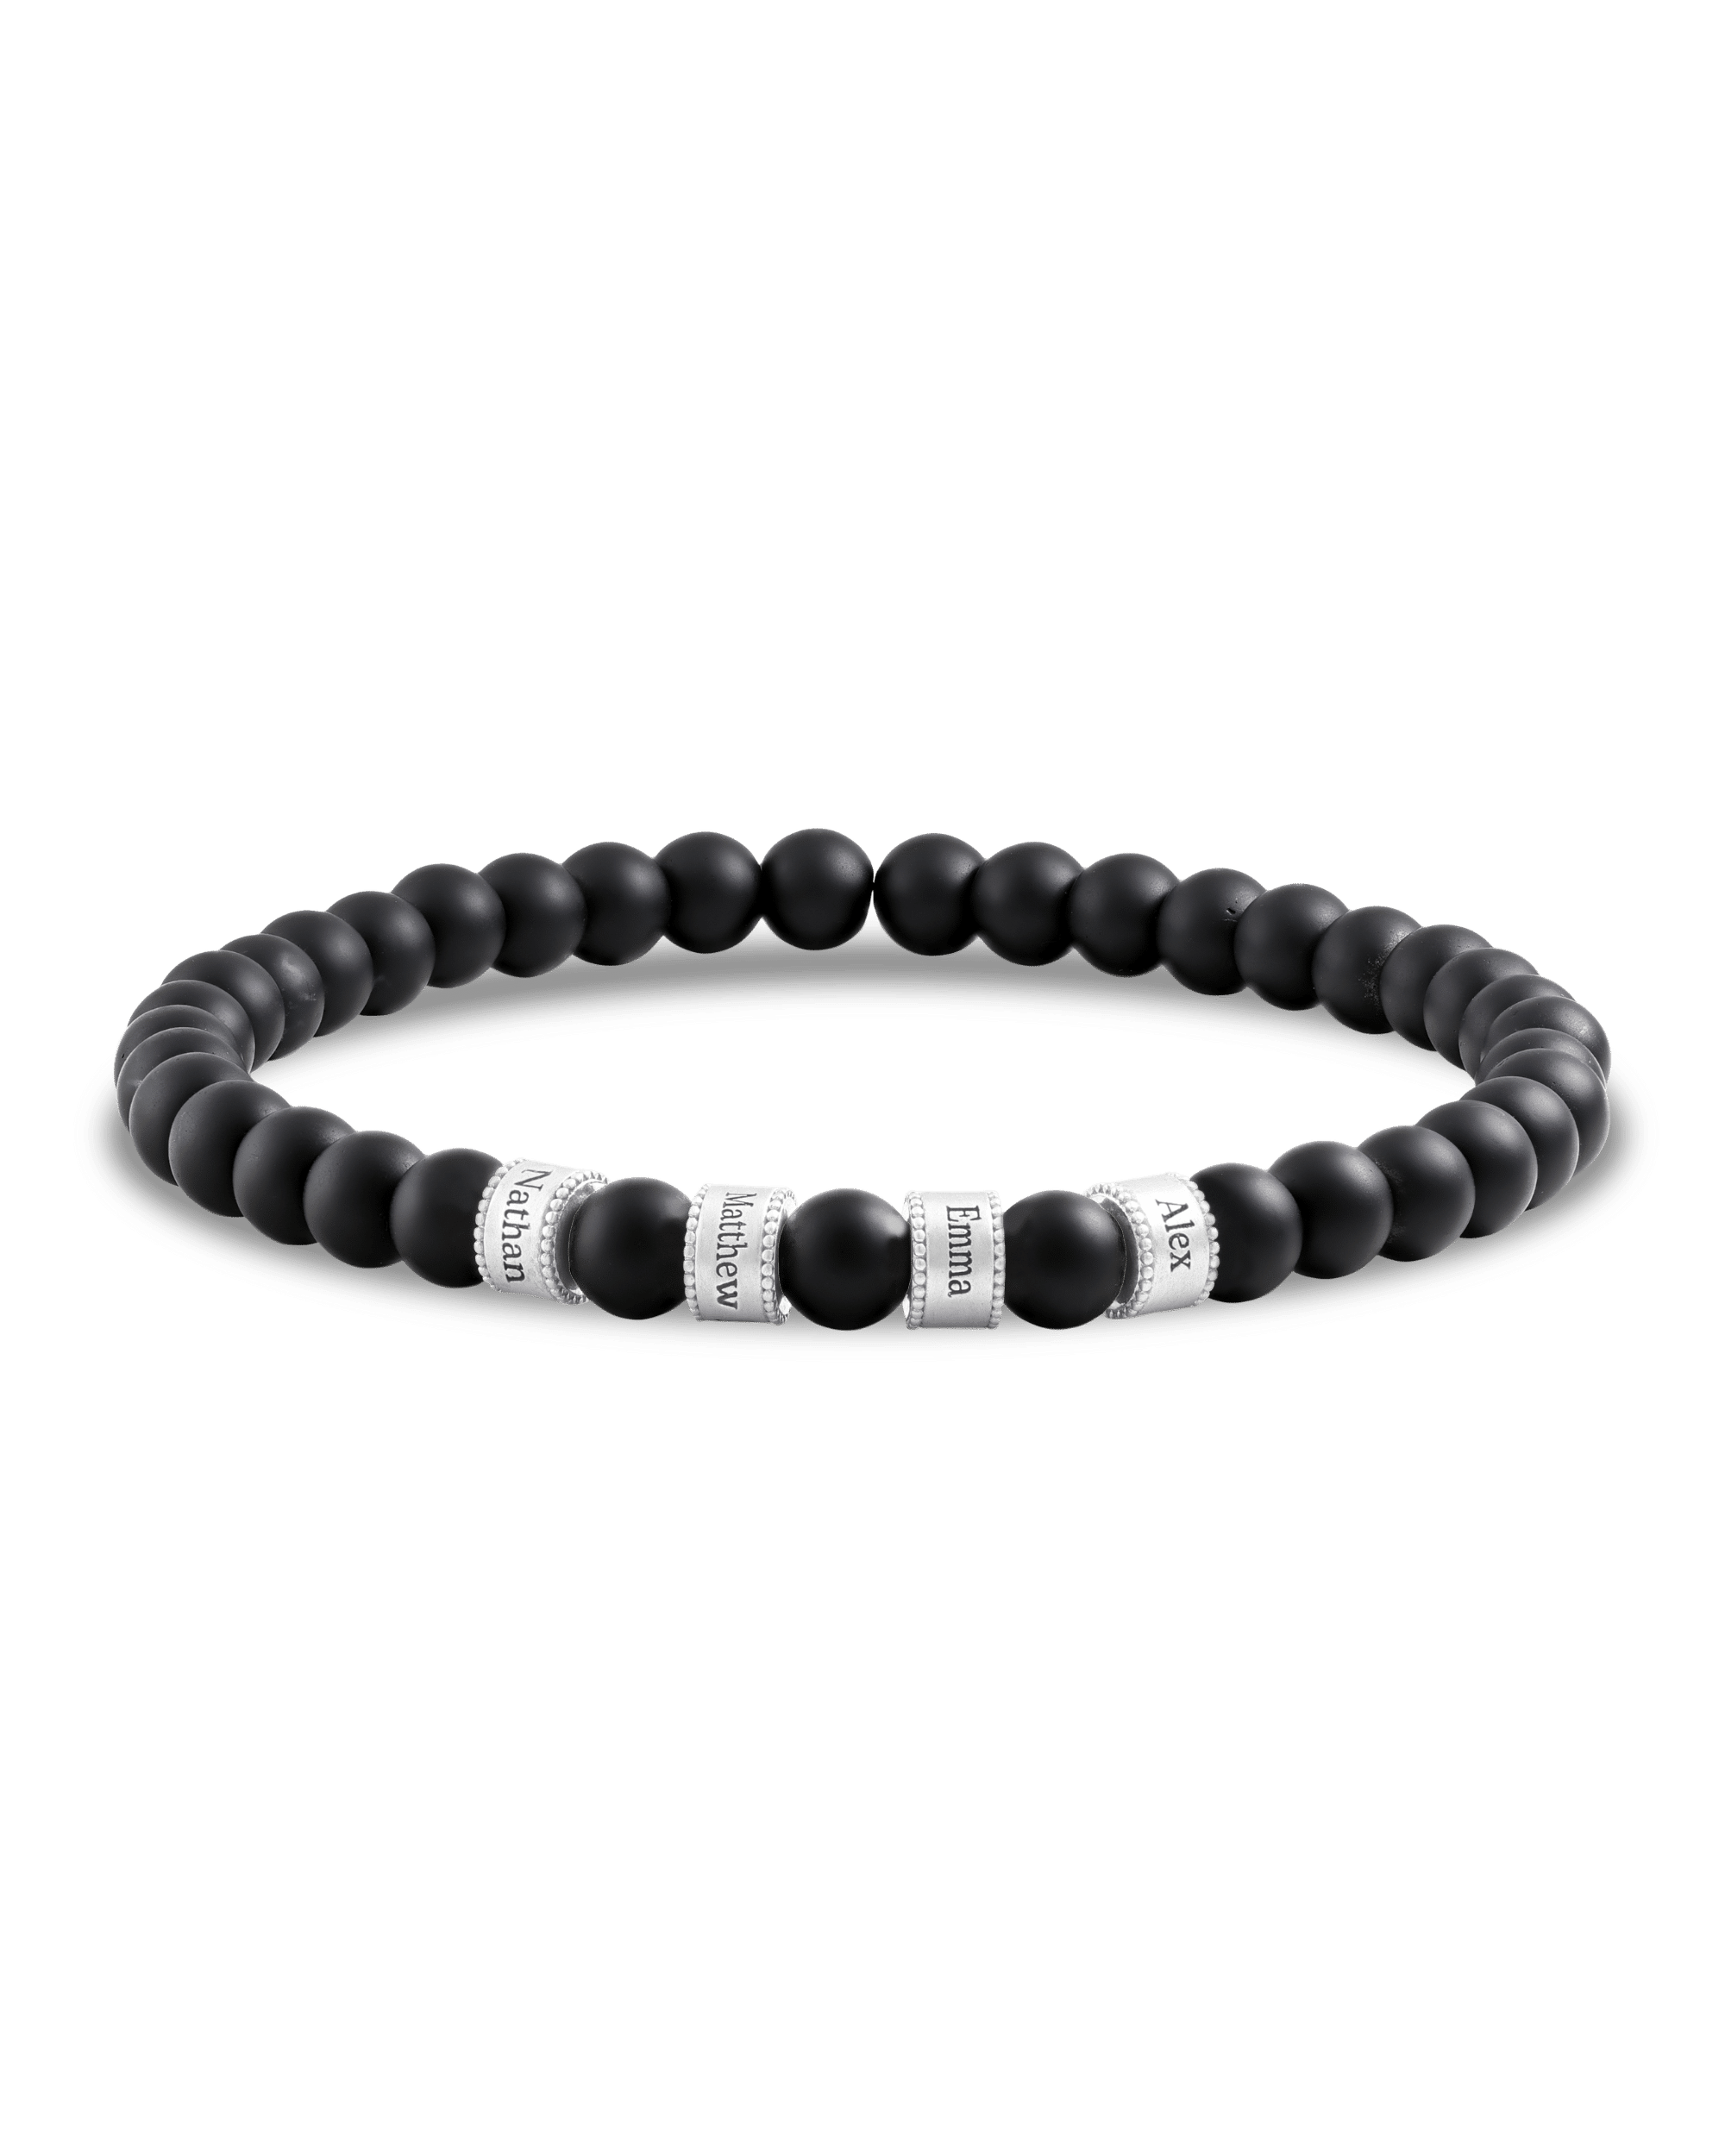 Dad's Legacy Beads Bracelet w/ Black Onyx Stones